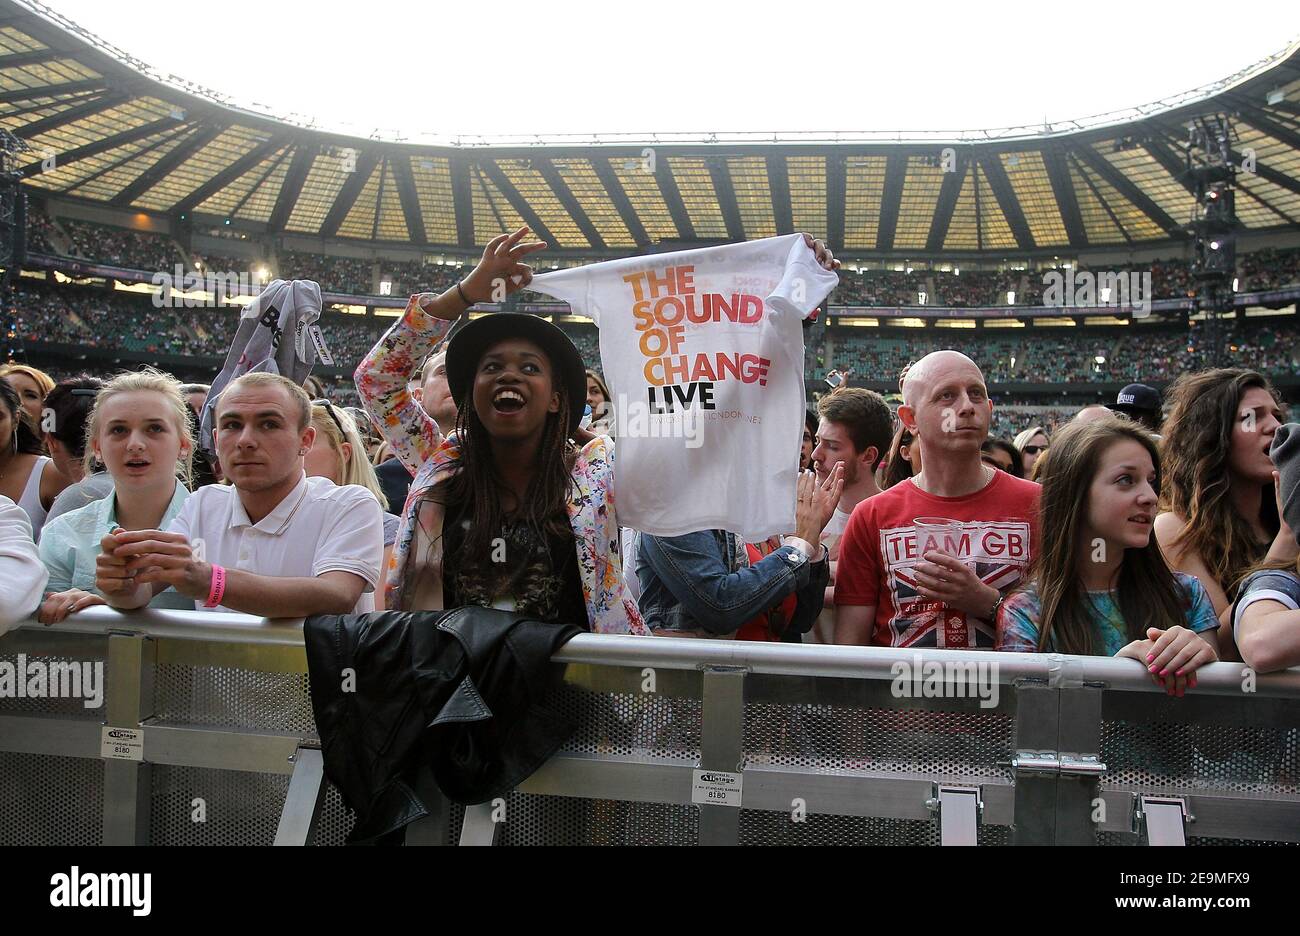 Twickenham, Royaume-Uni. 1st juin 2013. Crown, fans, tenant un tee-shirt pendant le concert live Sound of change au Chime for change au stade de Twickenham à Twickenham. Crédit: S.A.M./Alamy CRÉDIT: S.A.M./Alamy Banque D'Images